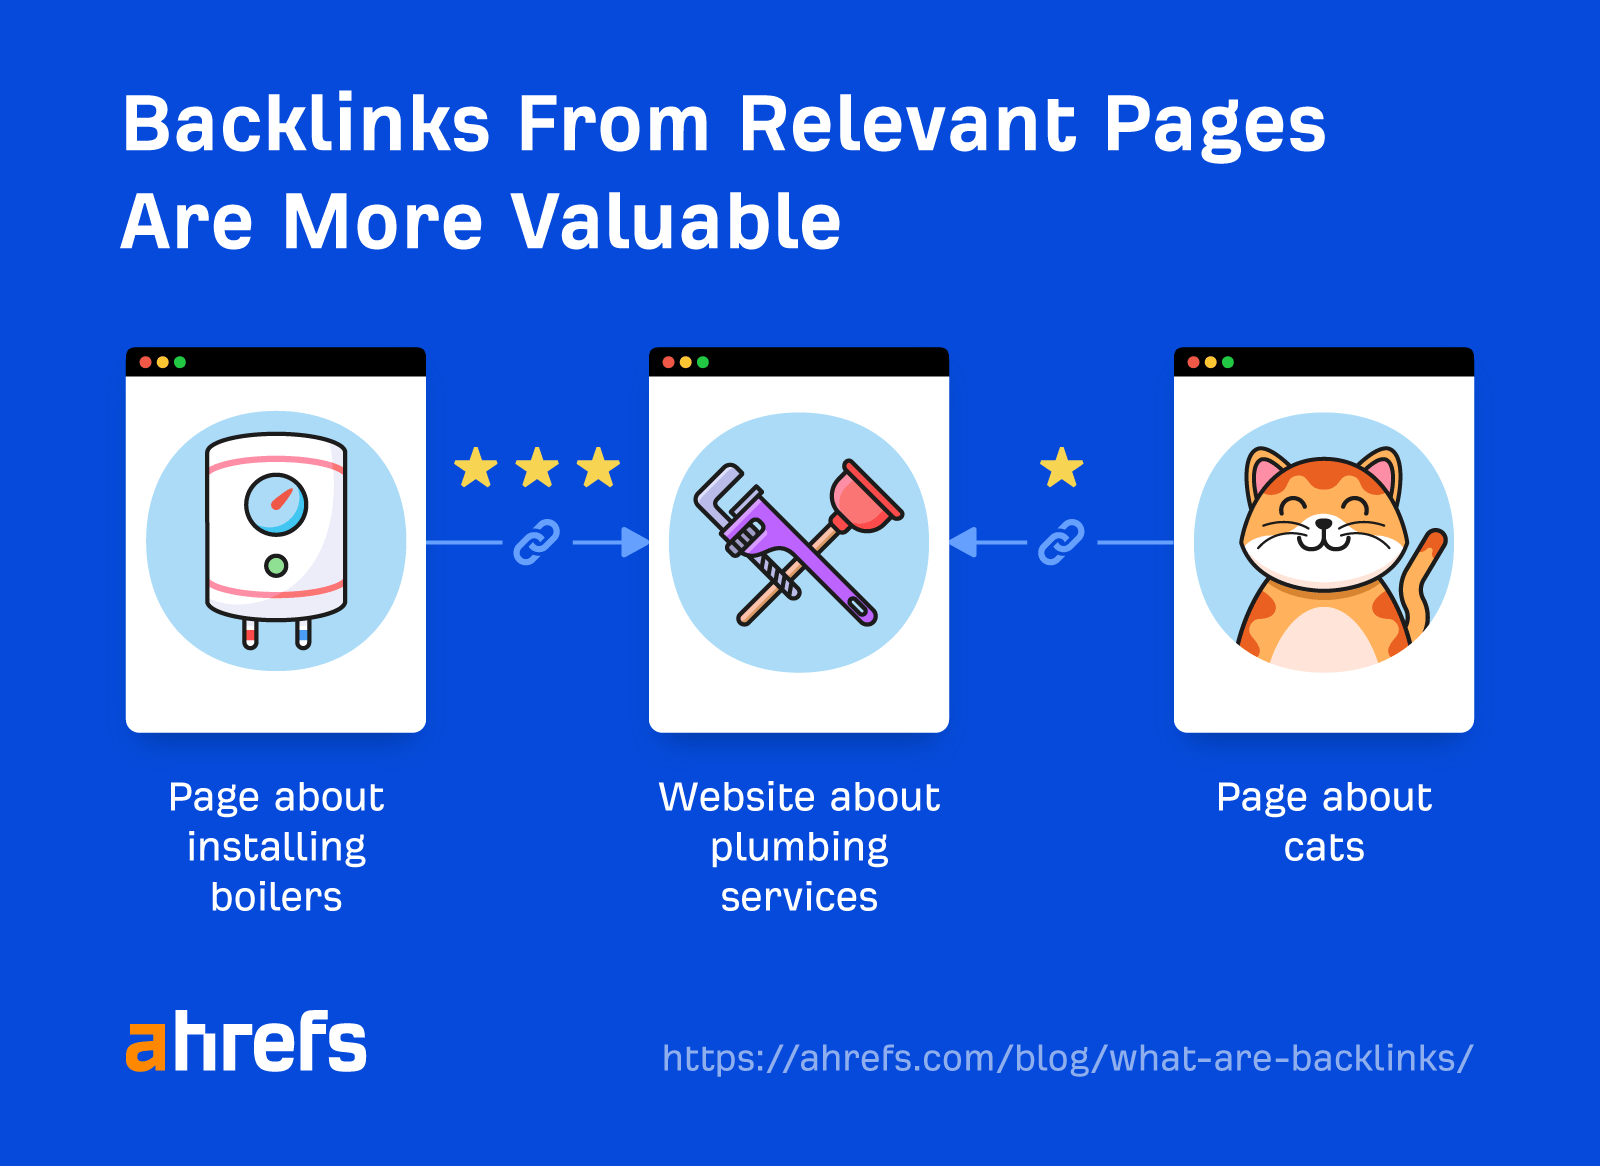 Los backlinks de páginas relevantes son más valiosos